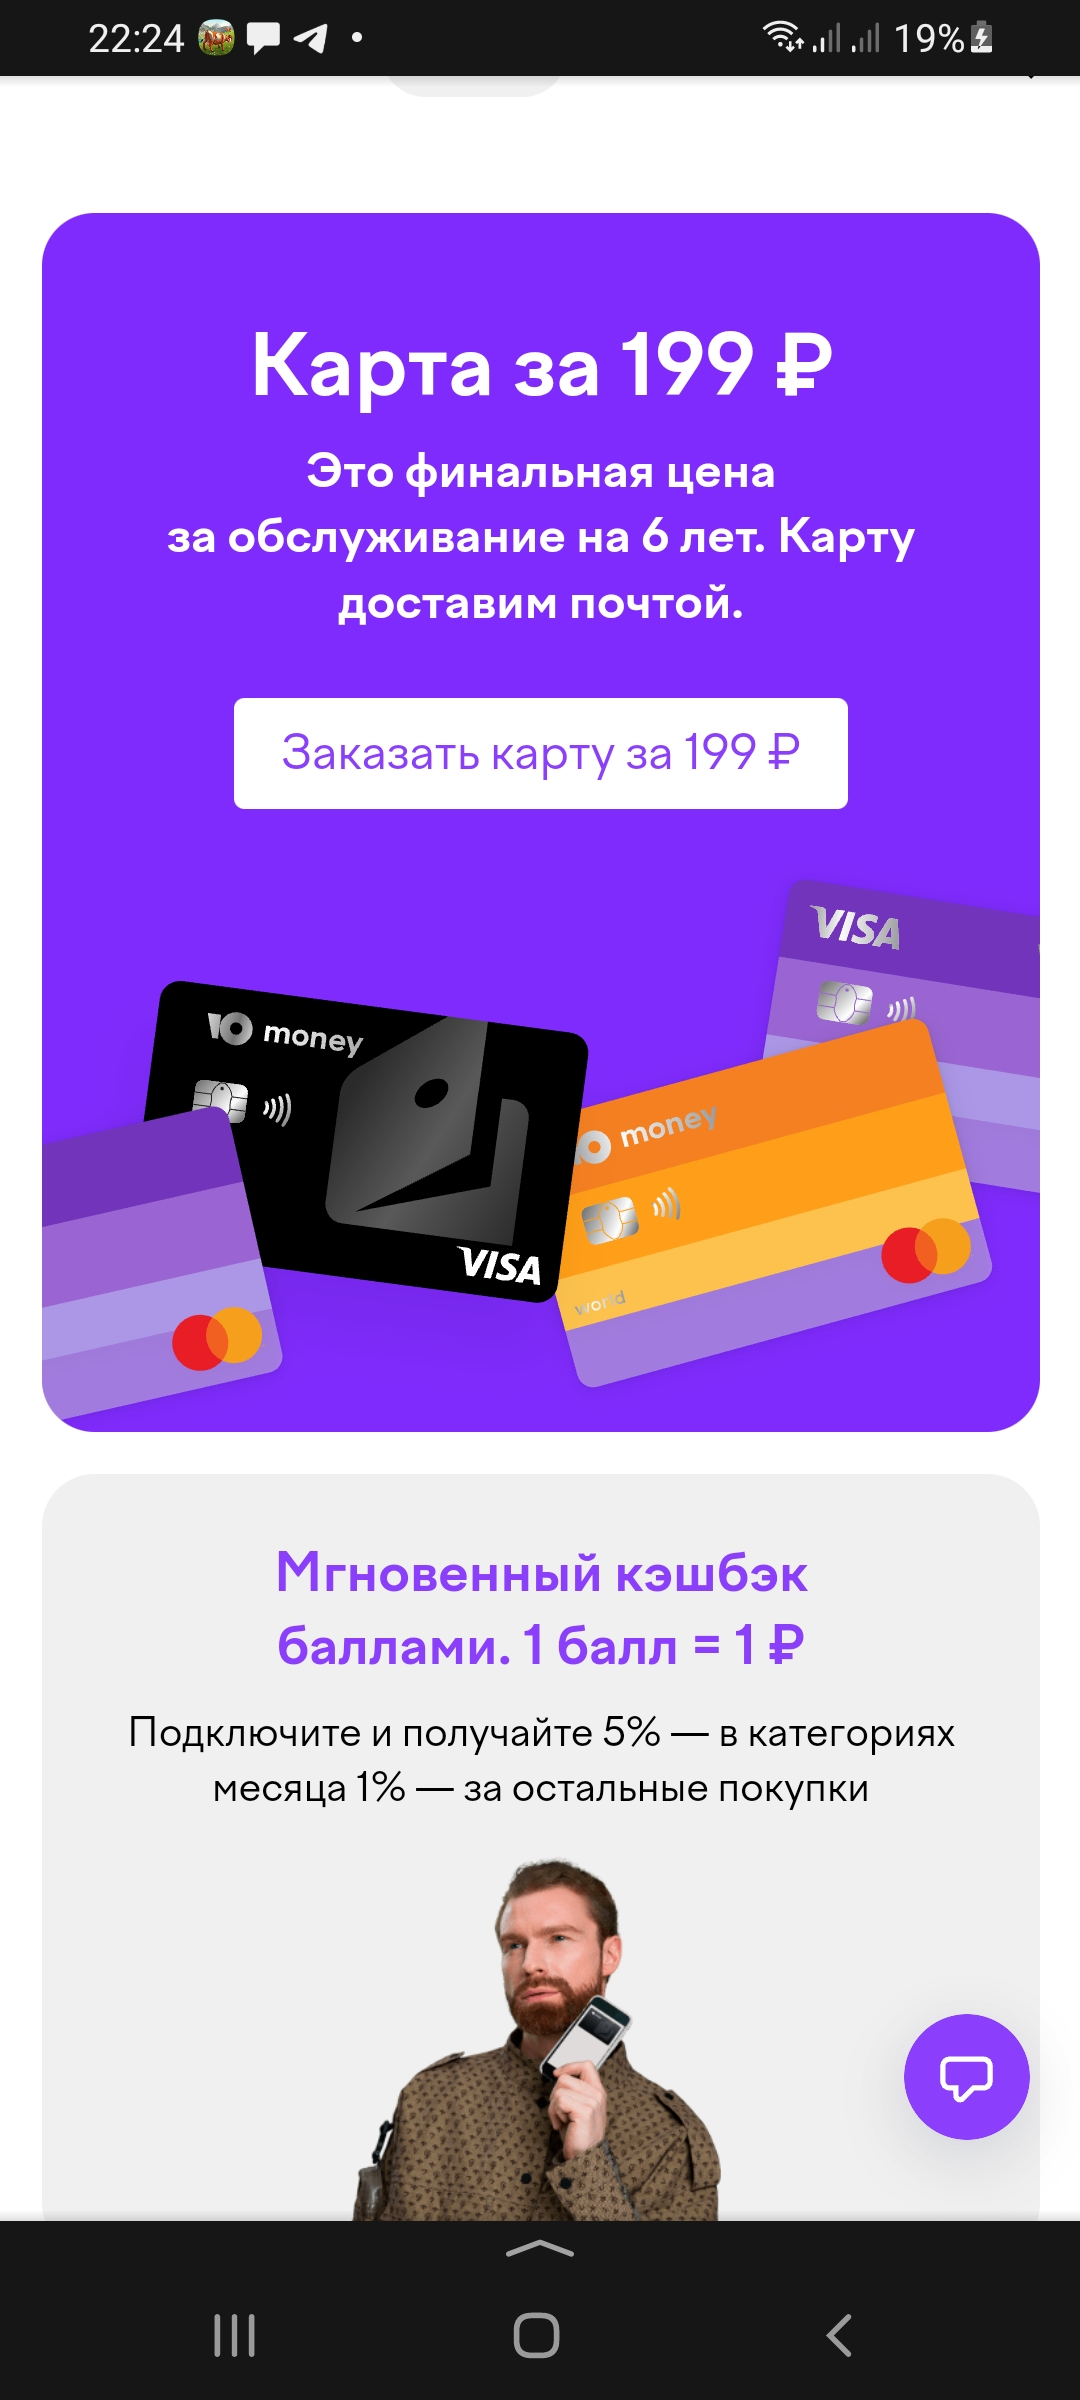 Screenshot_20220409-222430_Yandex.jpg